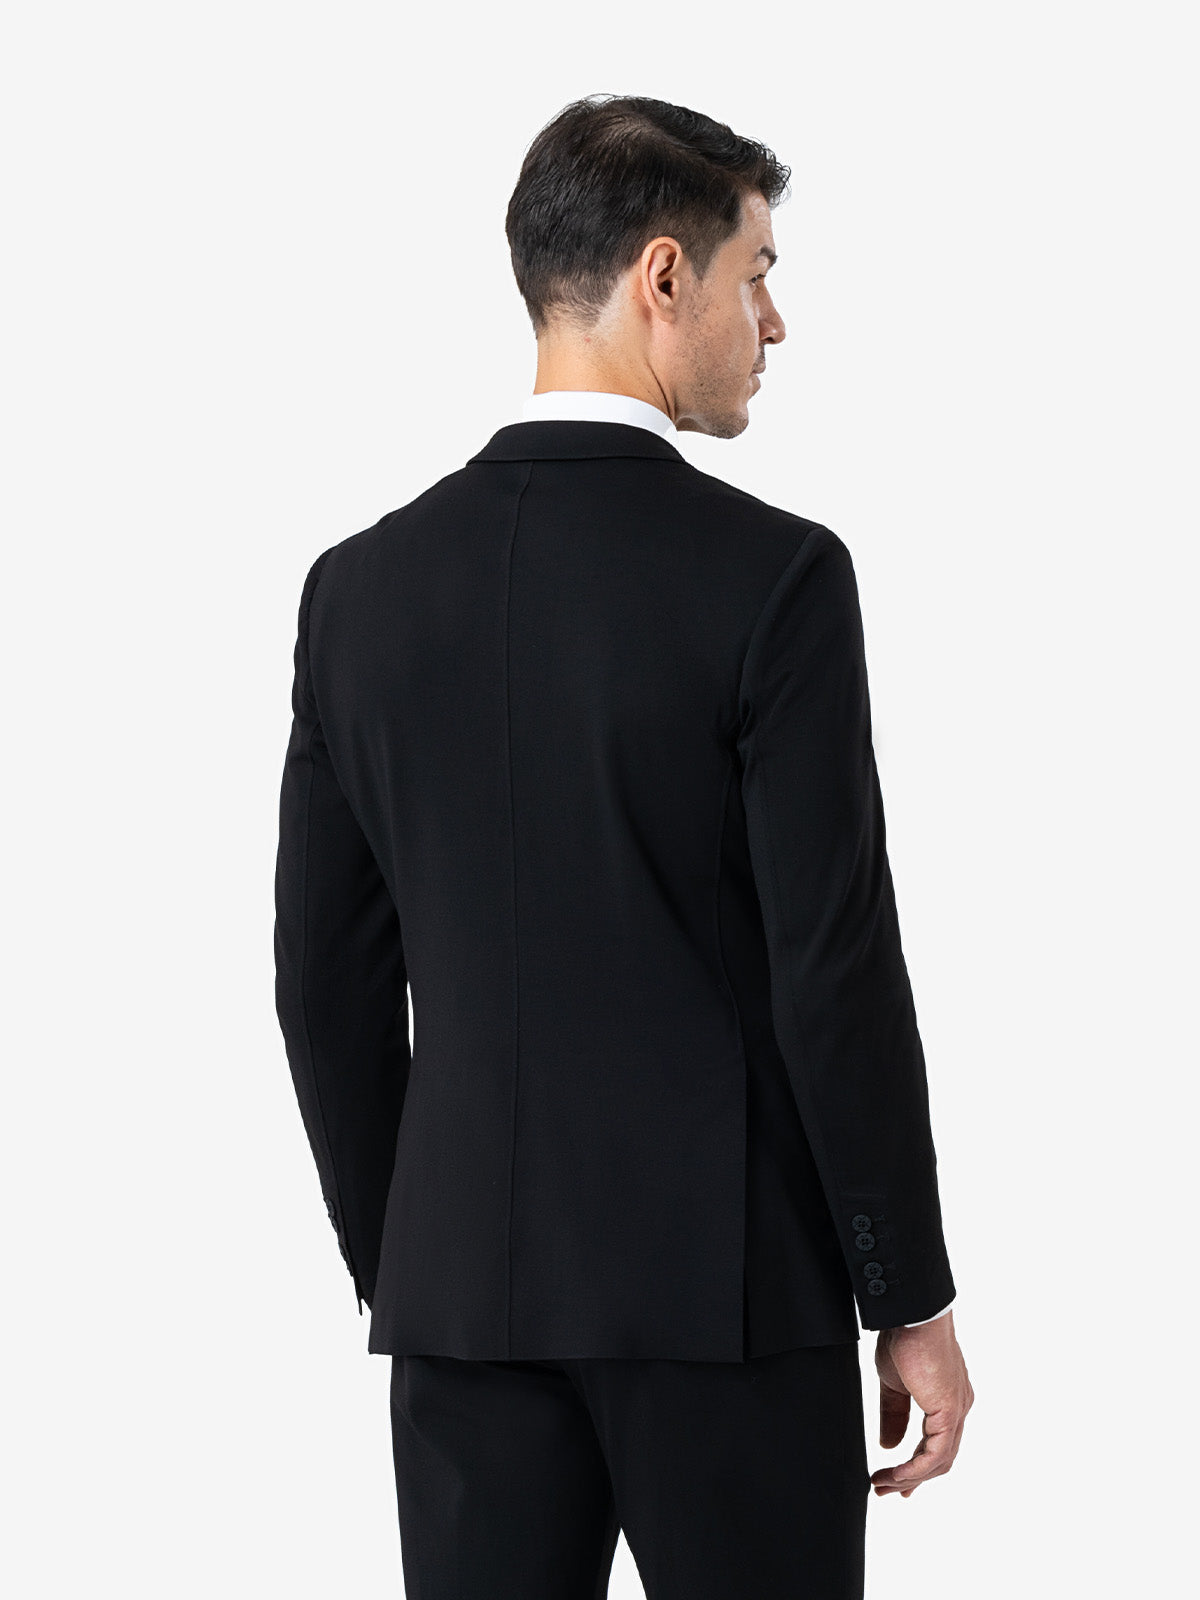 xSuit 4.0 Black  Performance Stretch & Machine Washable Men's Suit